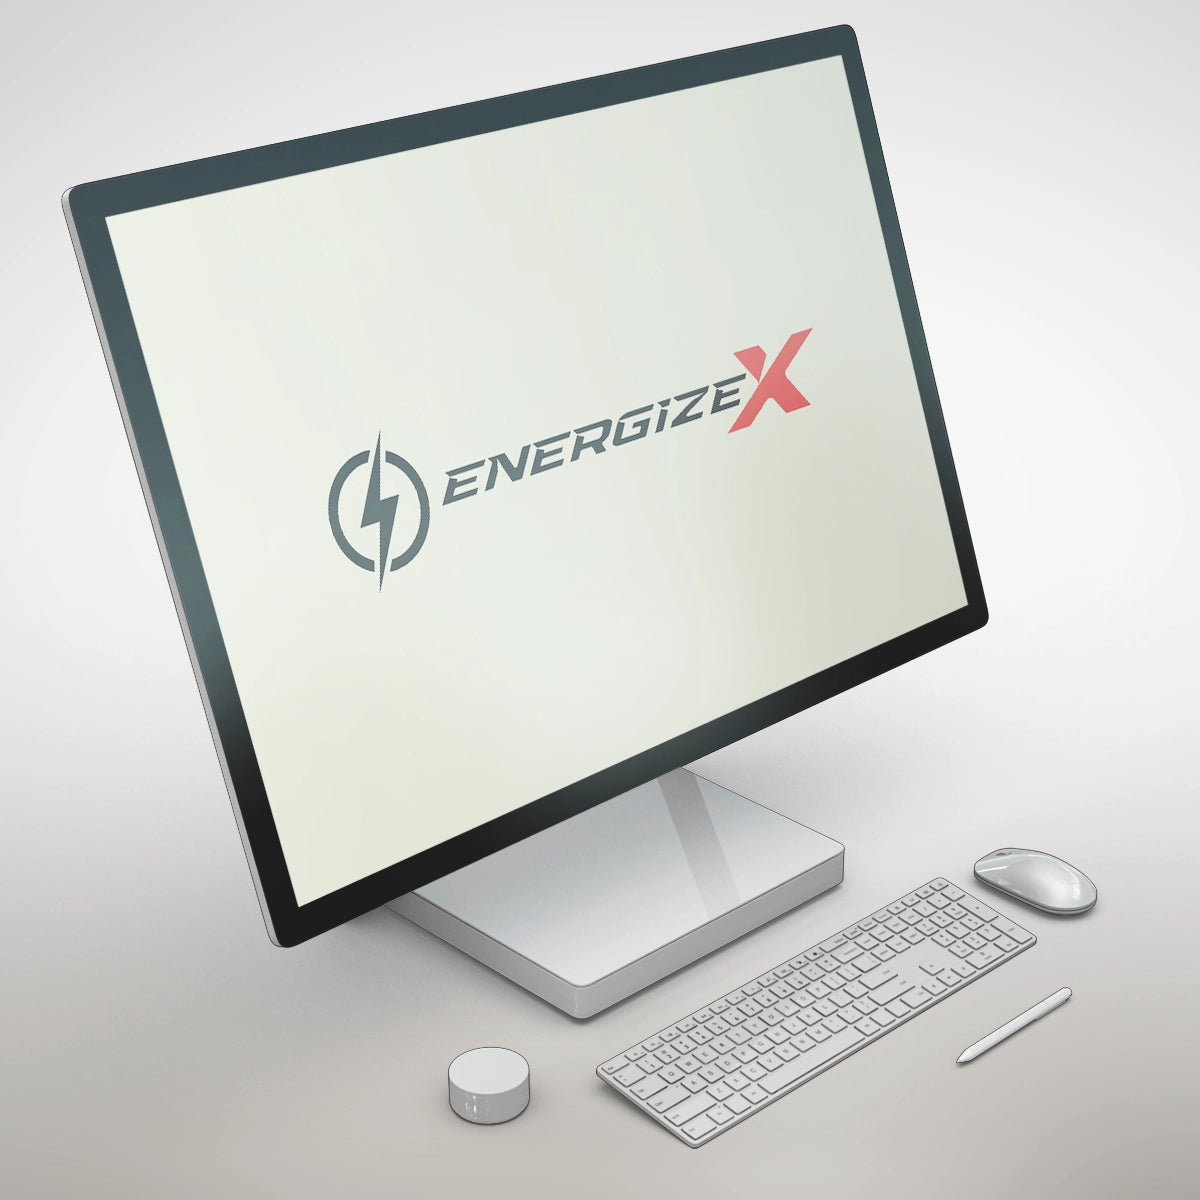 Energizex.com